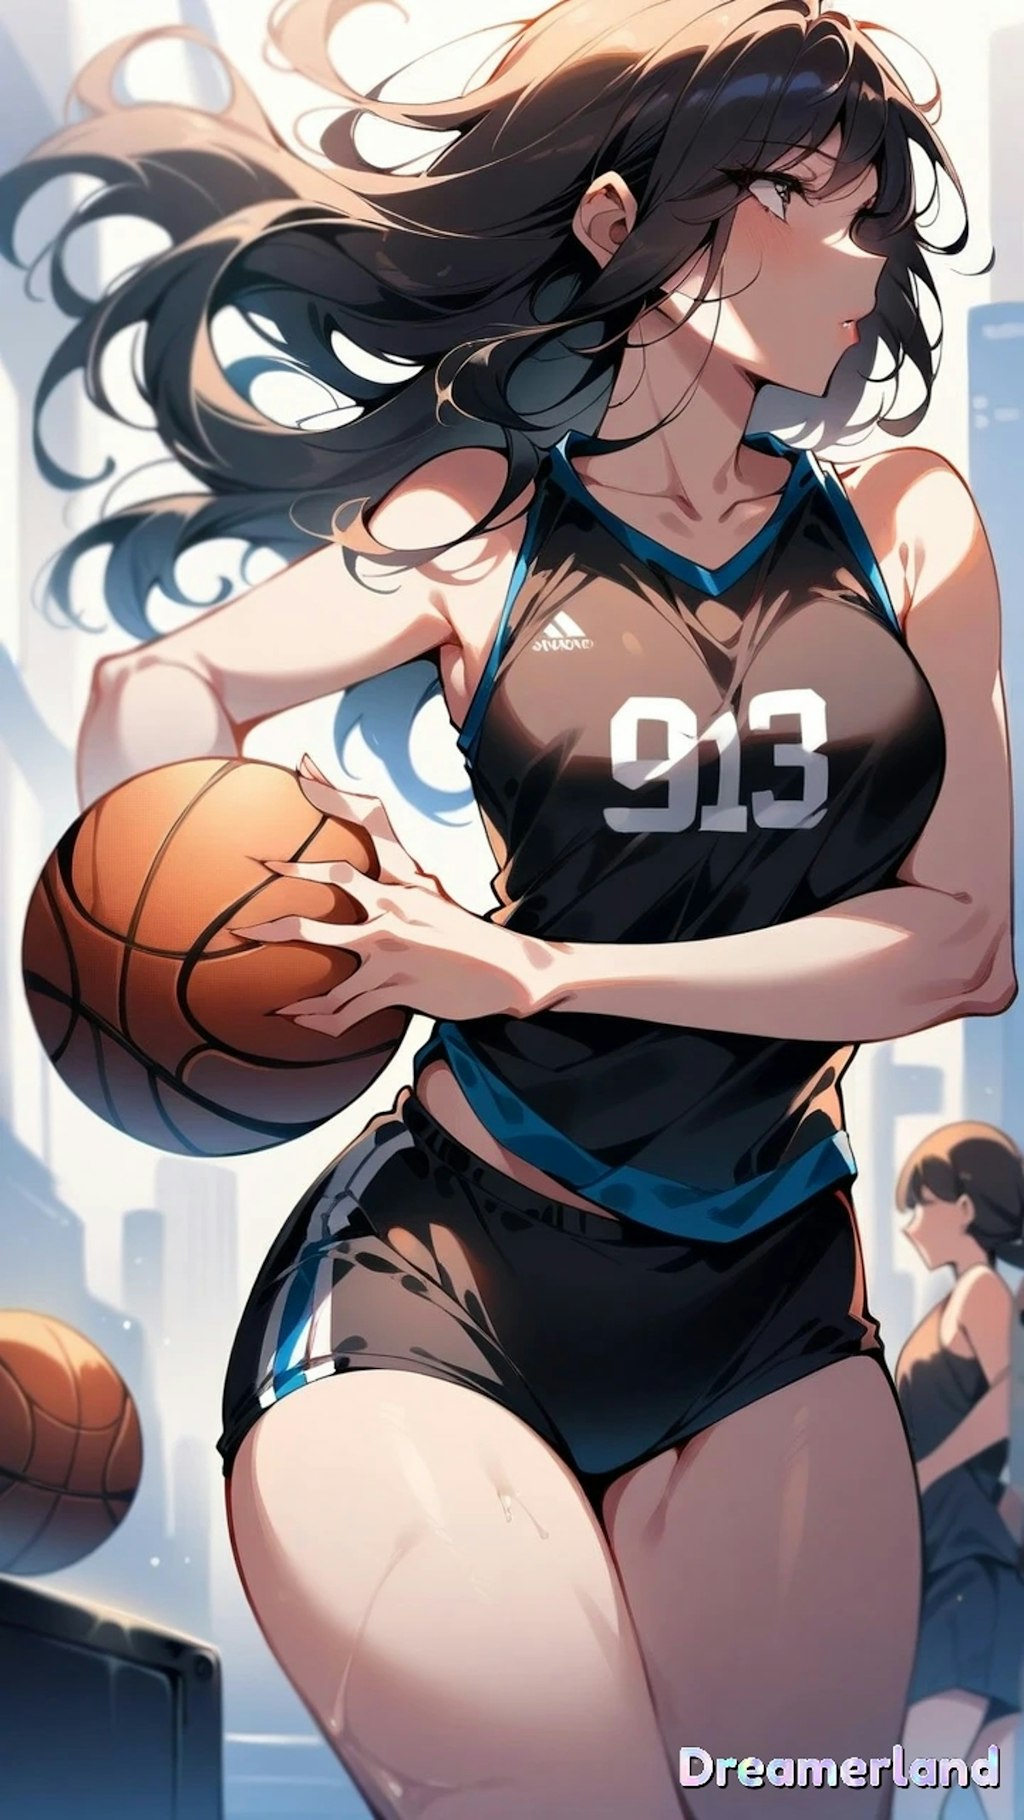 0501-29女子バスケットボールプレイヤー